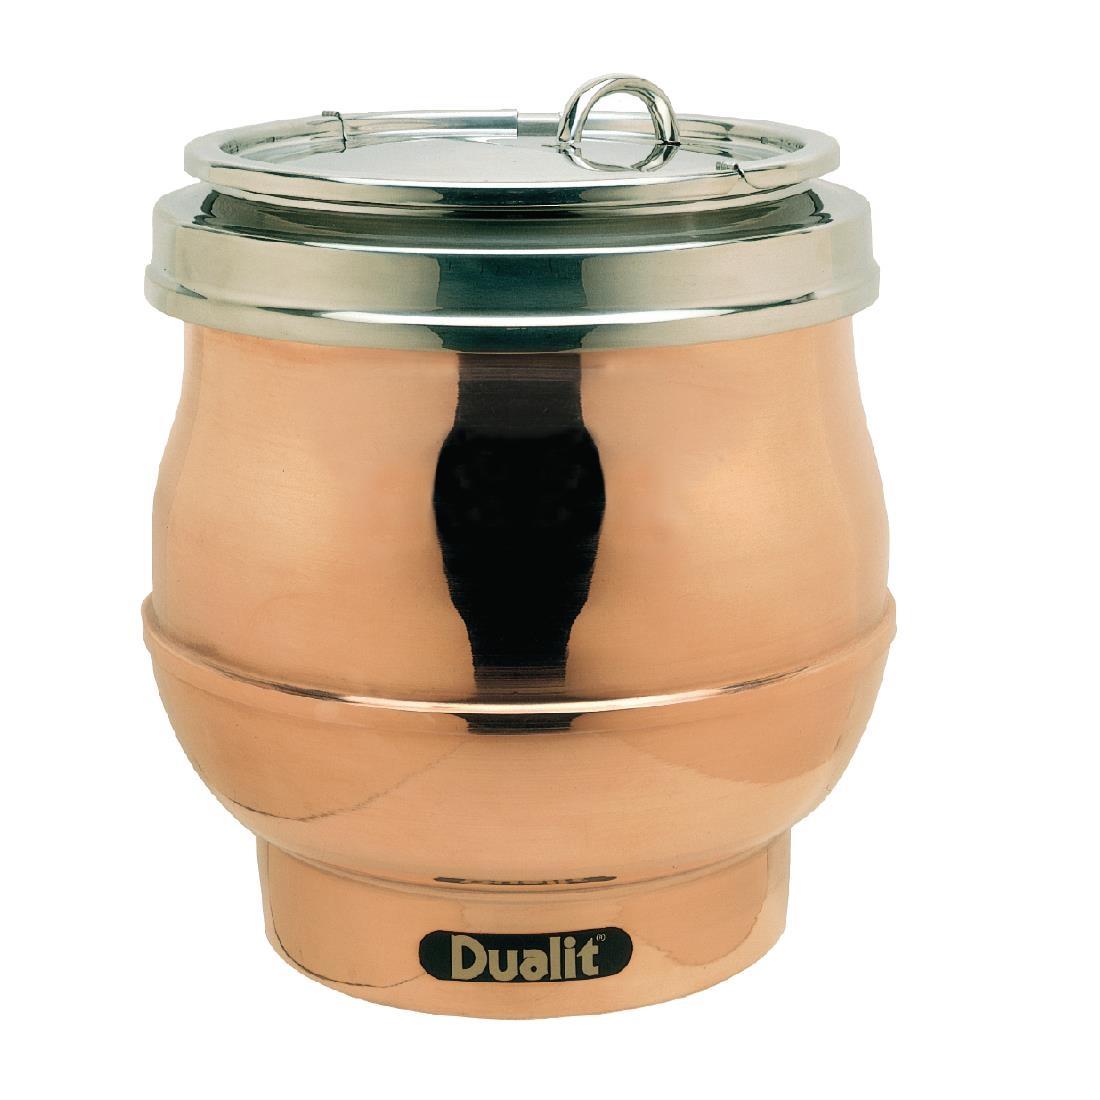 Dualit Soup Kettle Copper 70017 - GD393  - 1